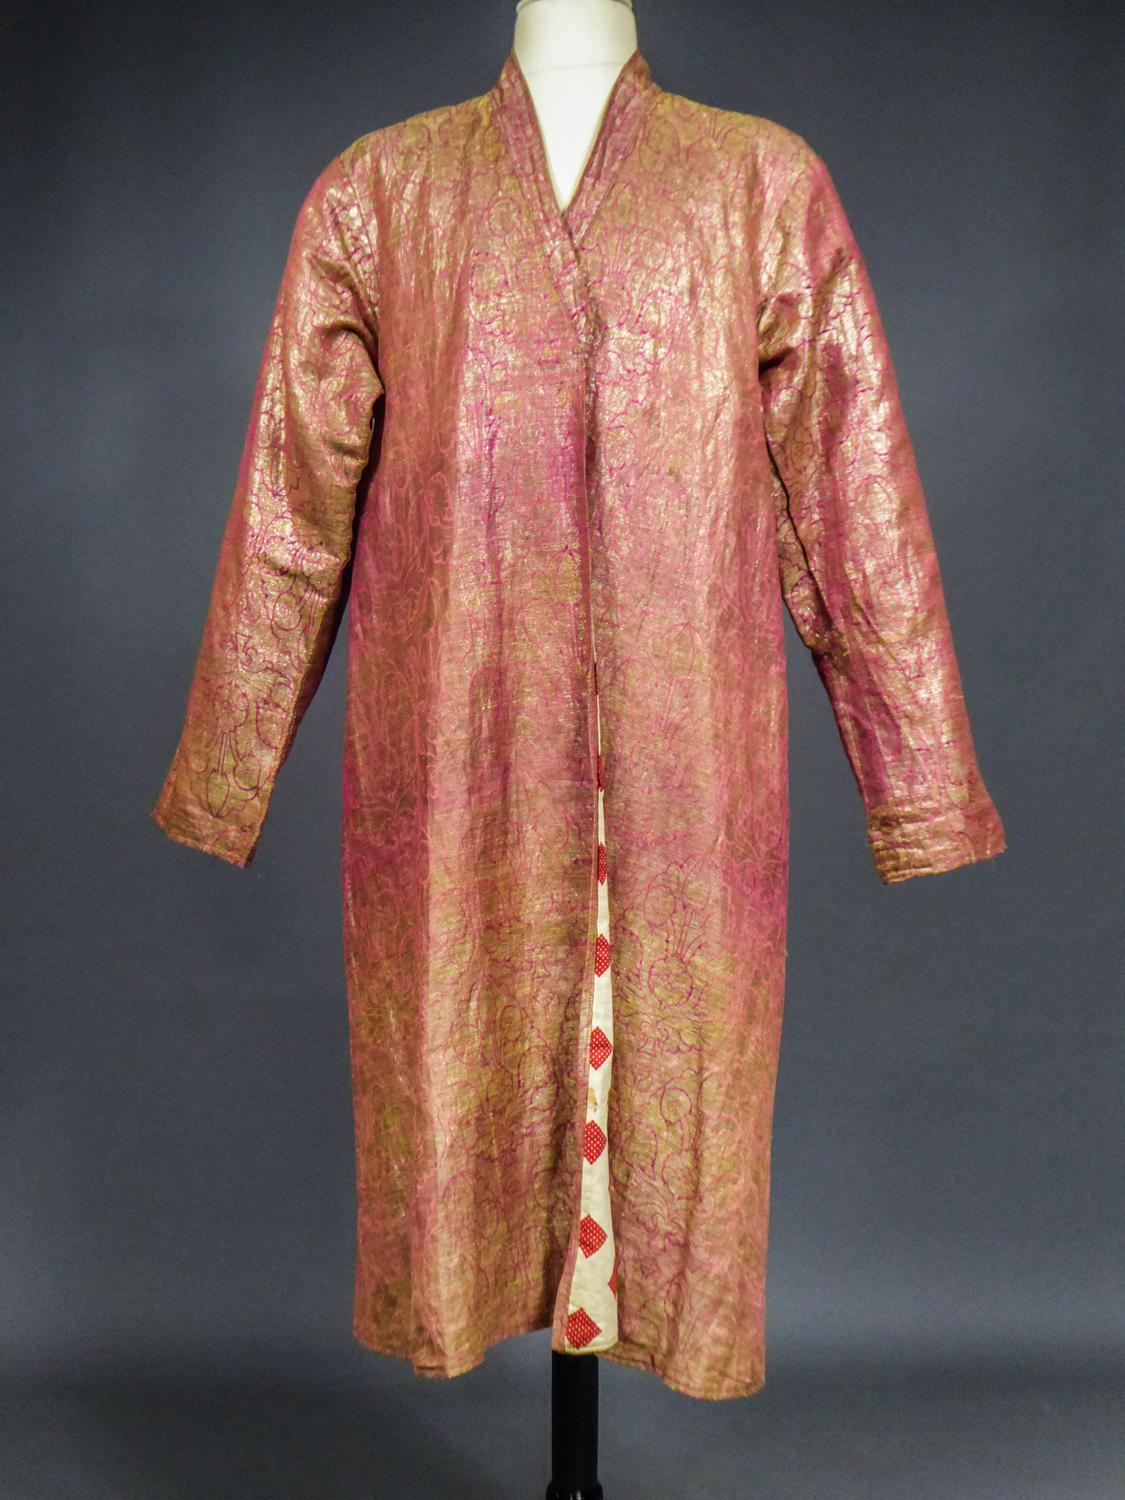 Coat or Banyan in Gold Lamé and Russian Cotton Print - Uzbekistan Circa 1920 2